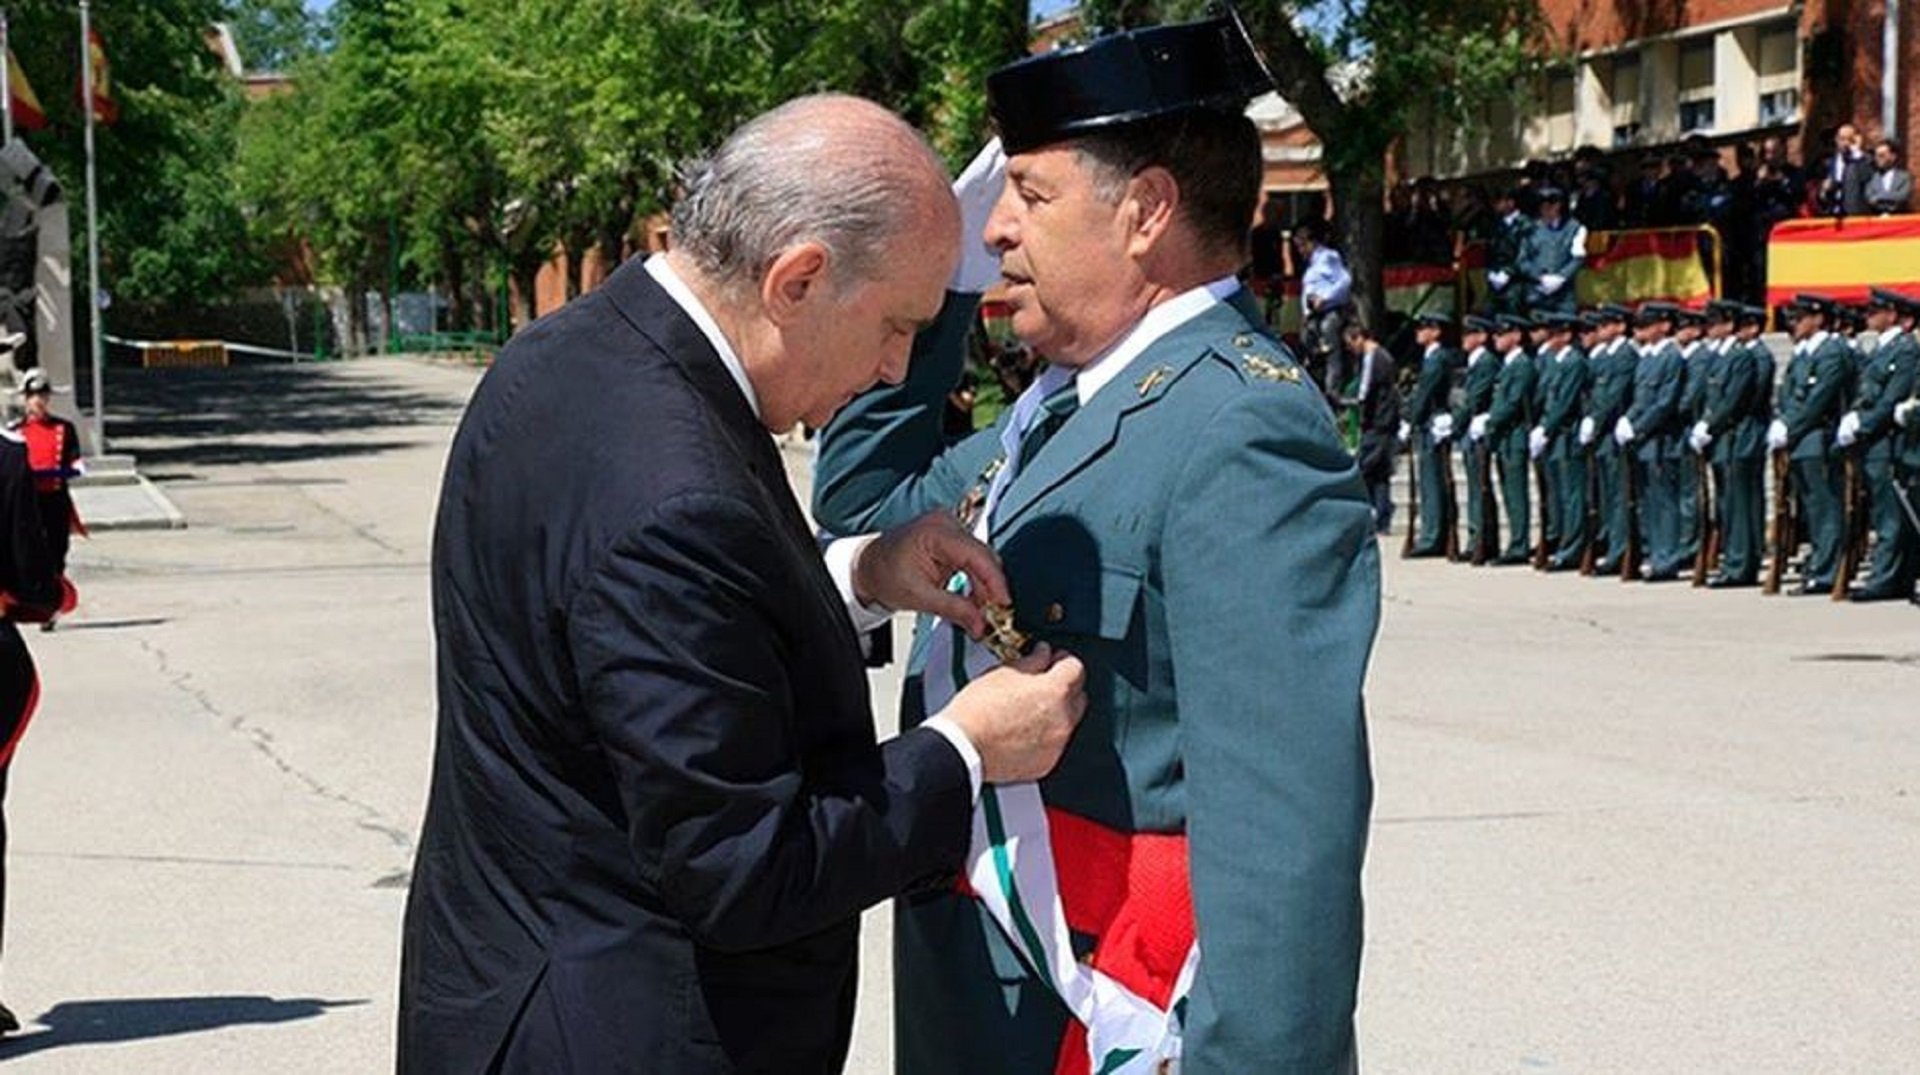 El general Pedro Vázquez Jarava y Jorge Fernández Díaz / Guardia Civil